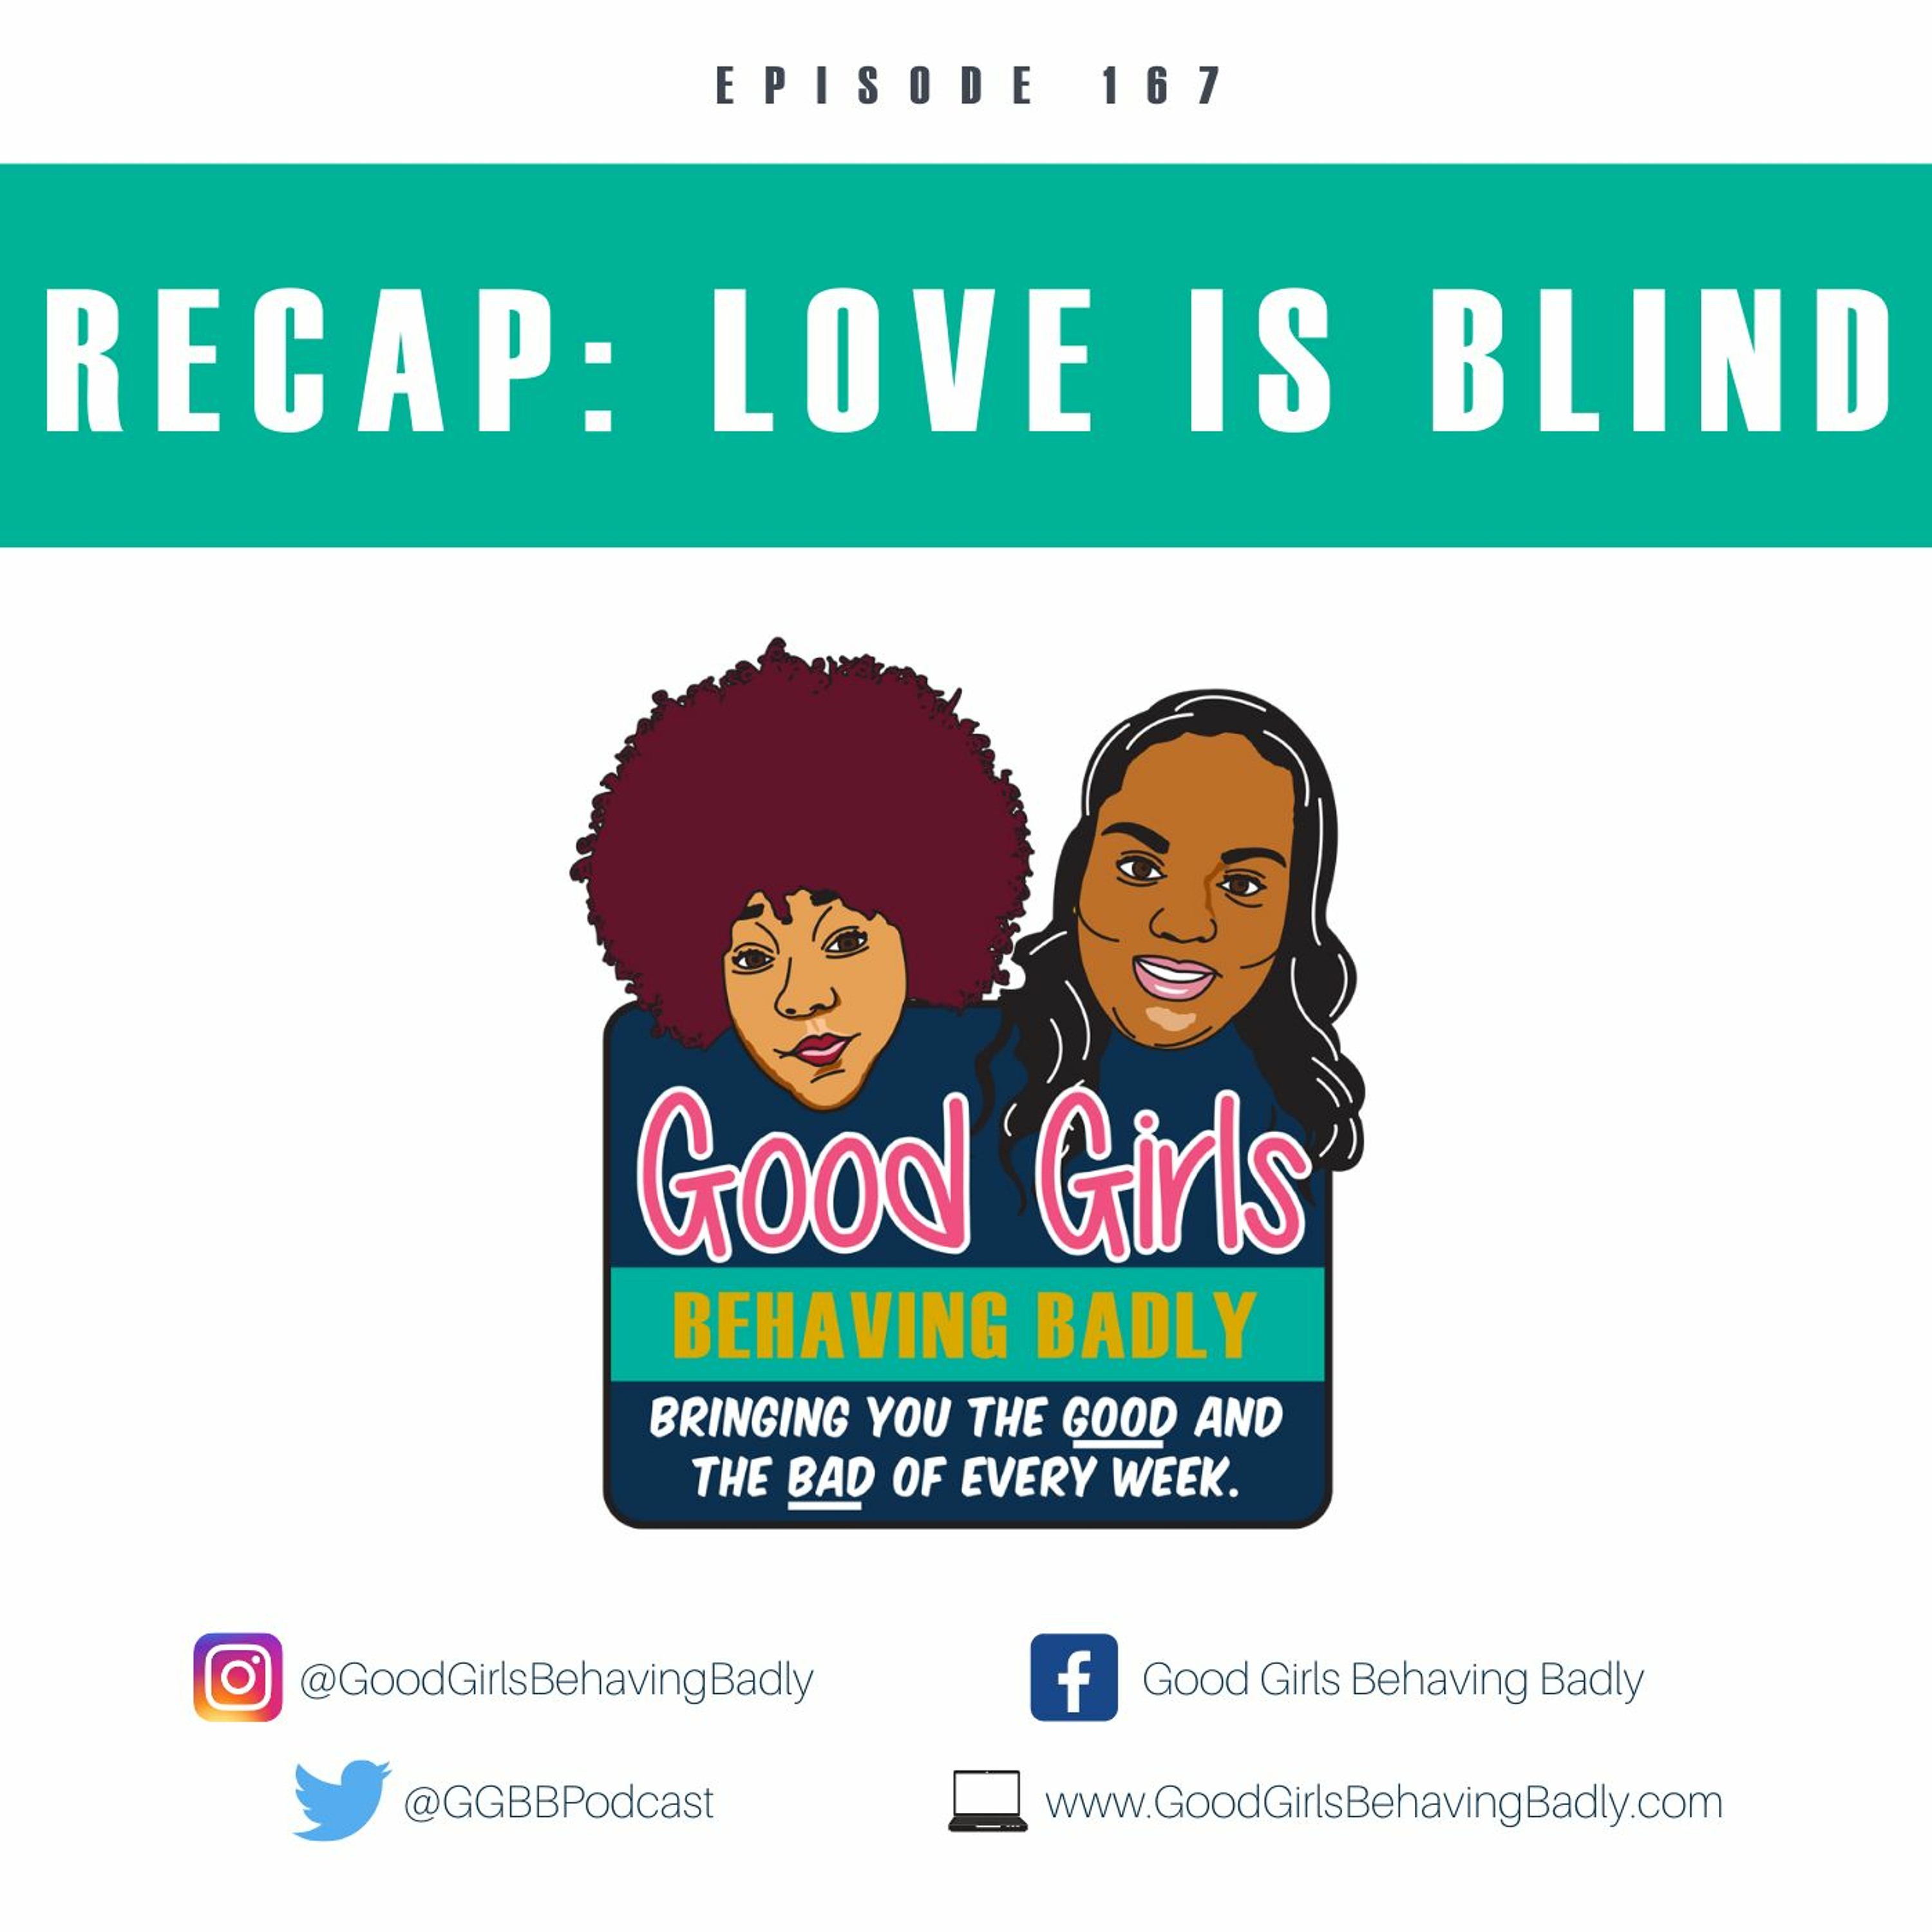 Episode 167: Recap - Love Is Blind